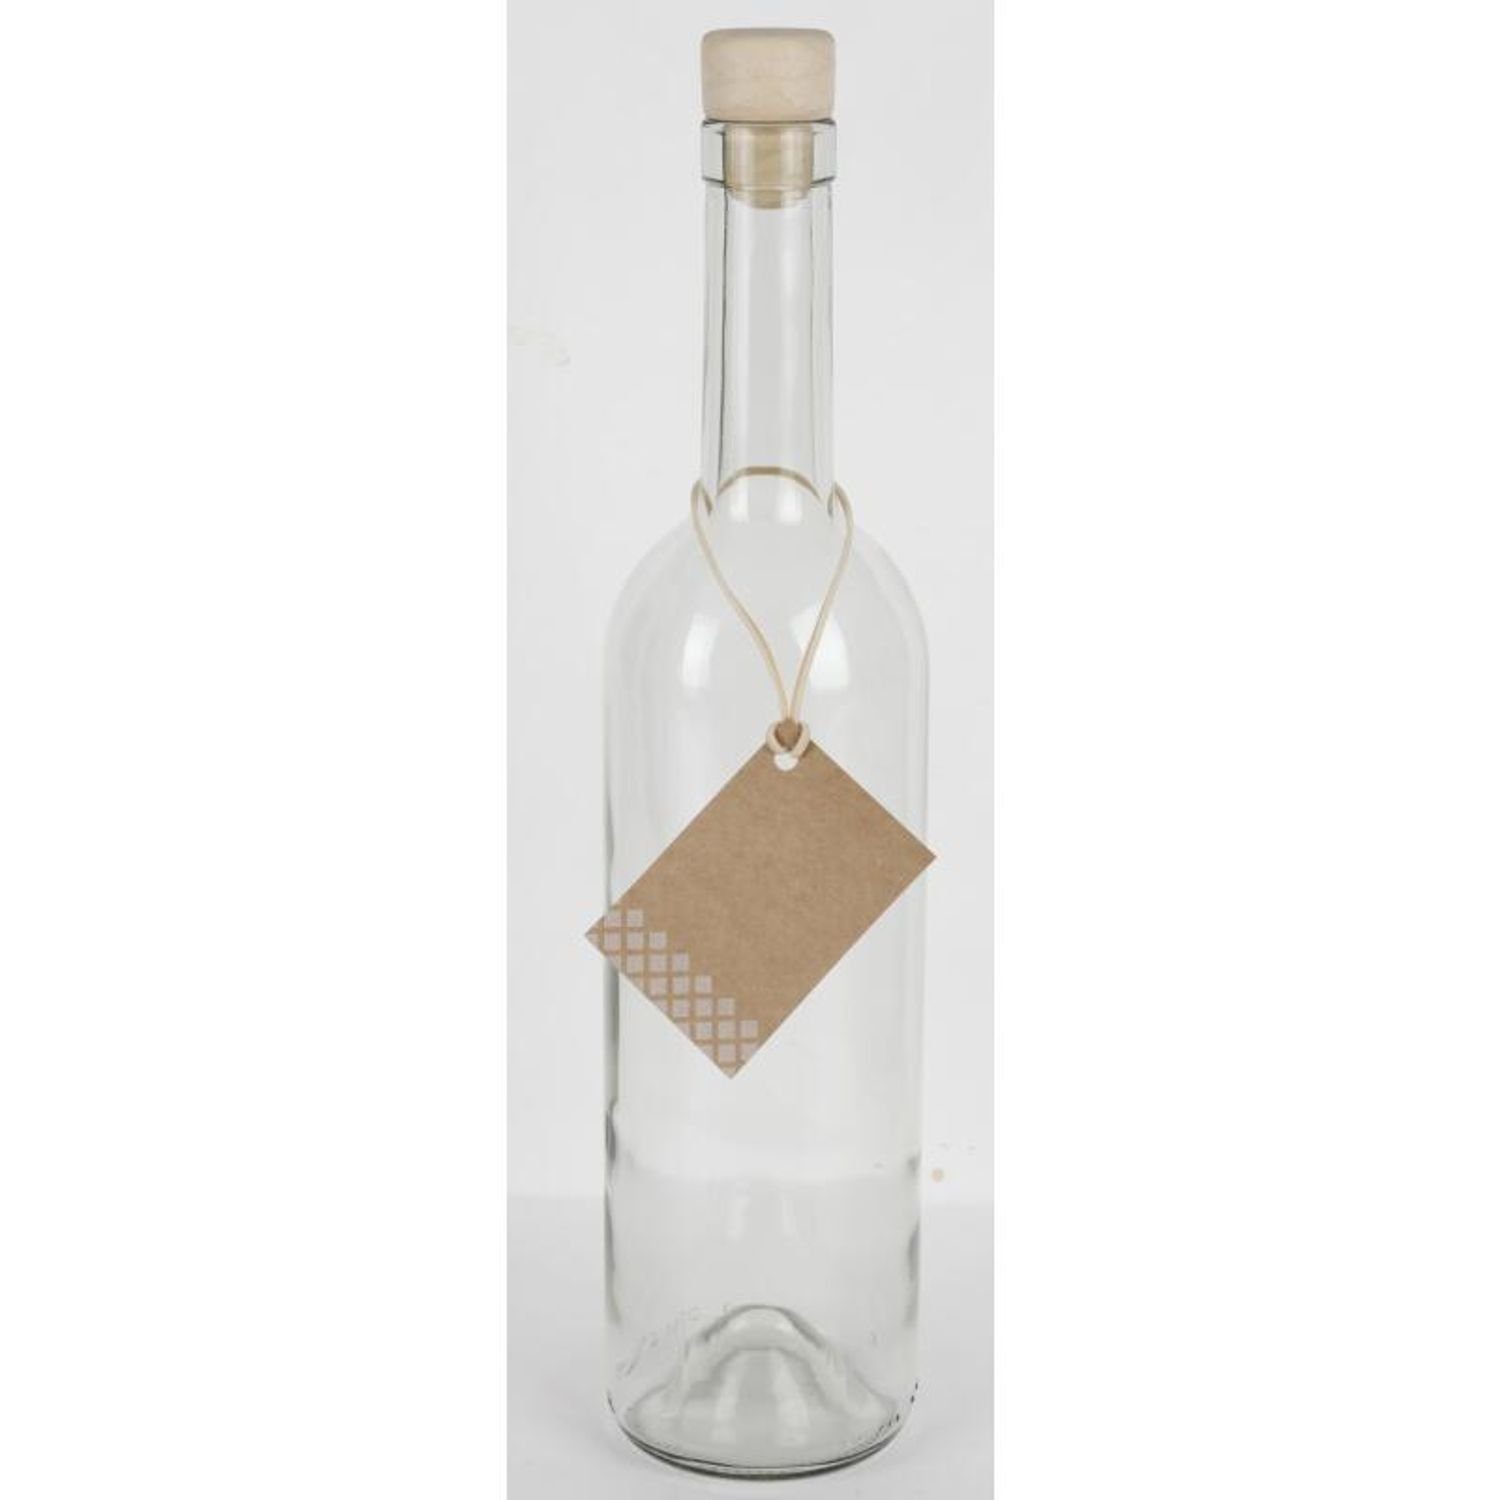 Omega Spolka Jawna Trinkflasche 15x Etikett Glasflasche Wasser Saft 0,75L Küc Korkenverschluss Trinken